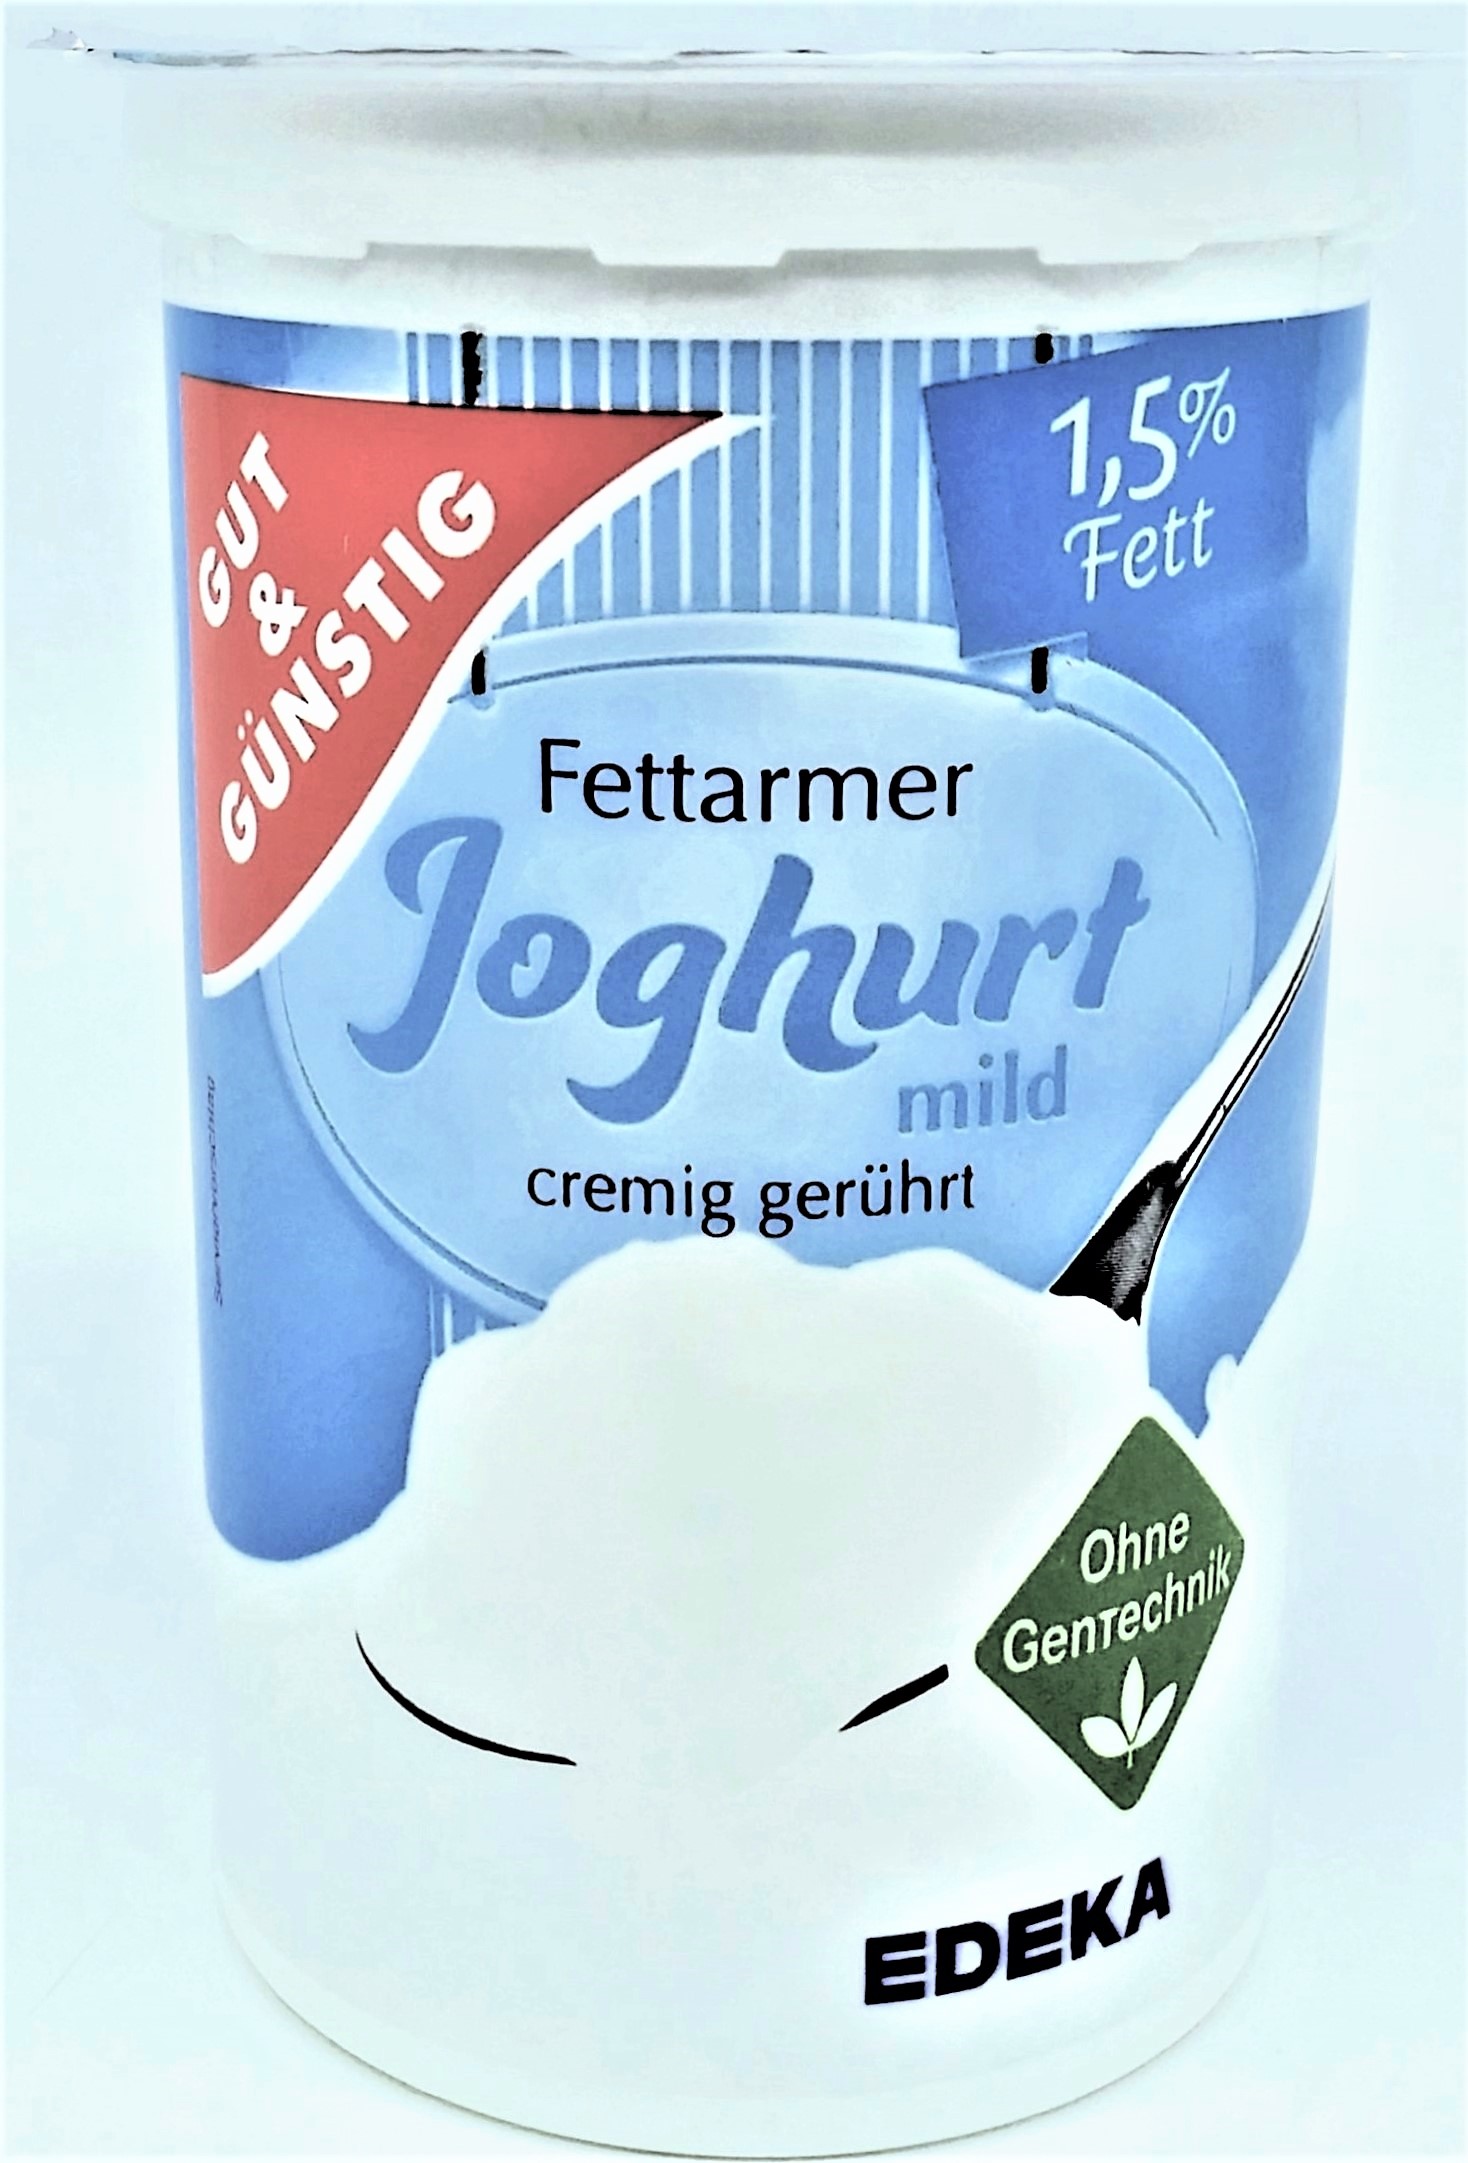 G&G fettarmer Joghurt 1,5% Fett 500g